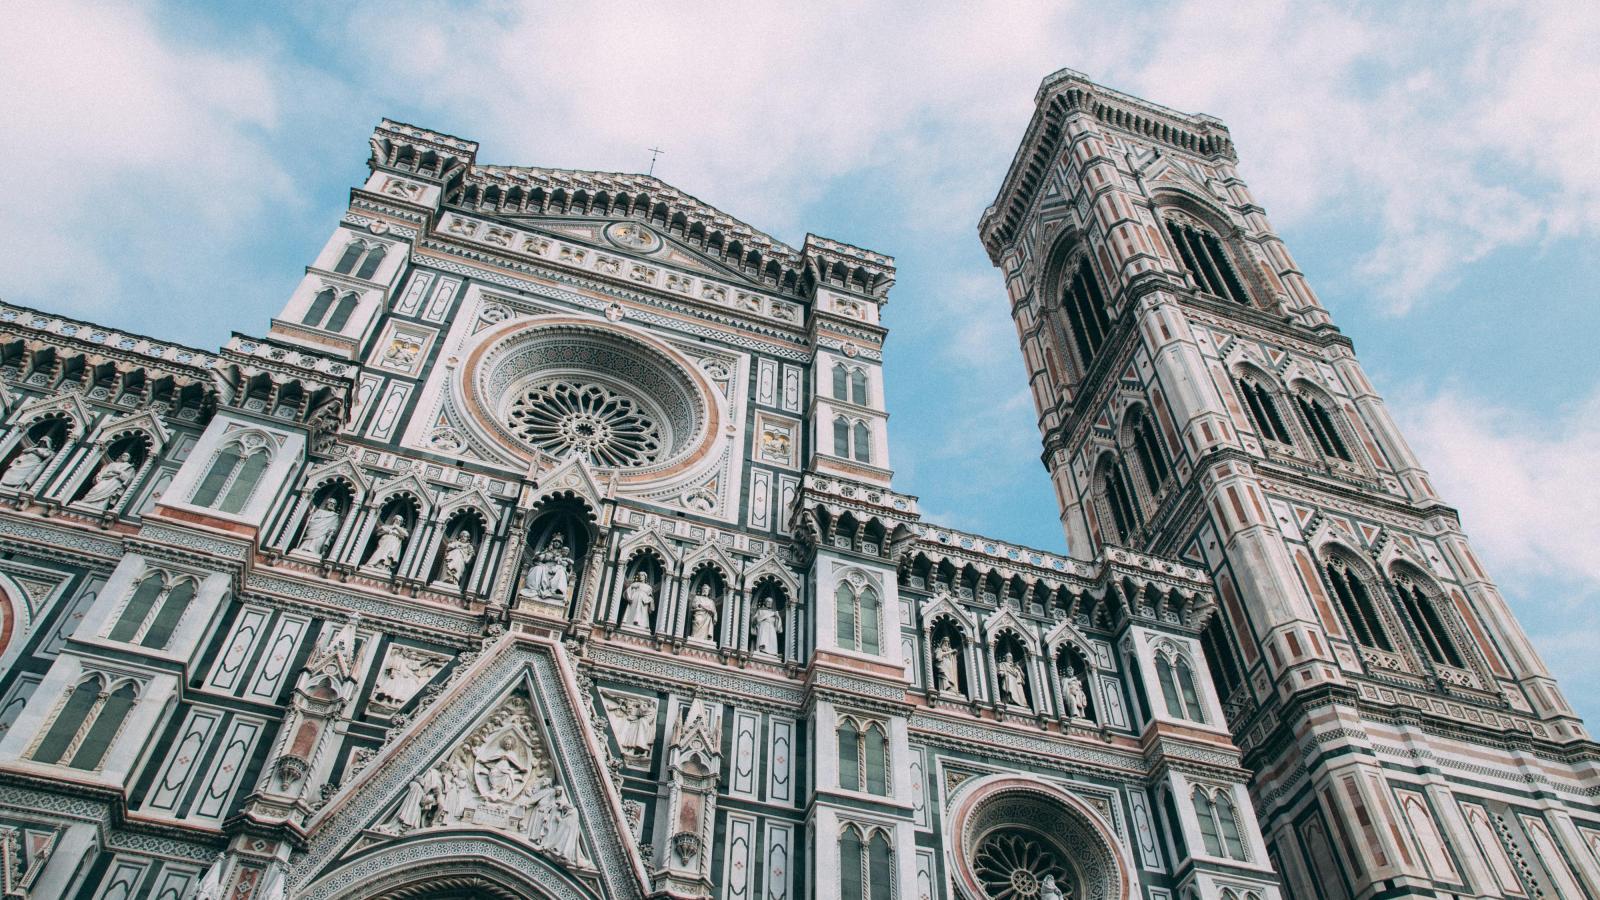 Die Kathedrale von Florenz von unten Fotografiert vor einem leicht bew?lkten blauen Himmel.